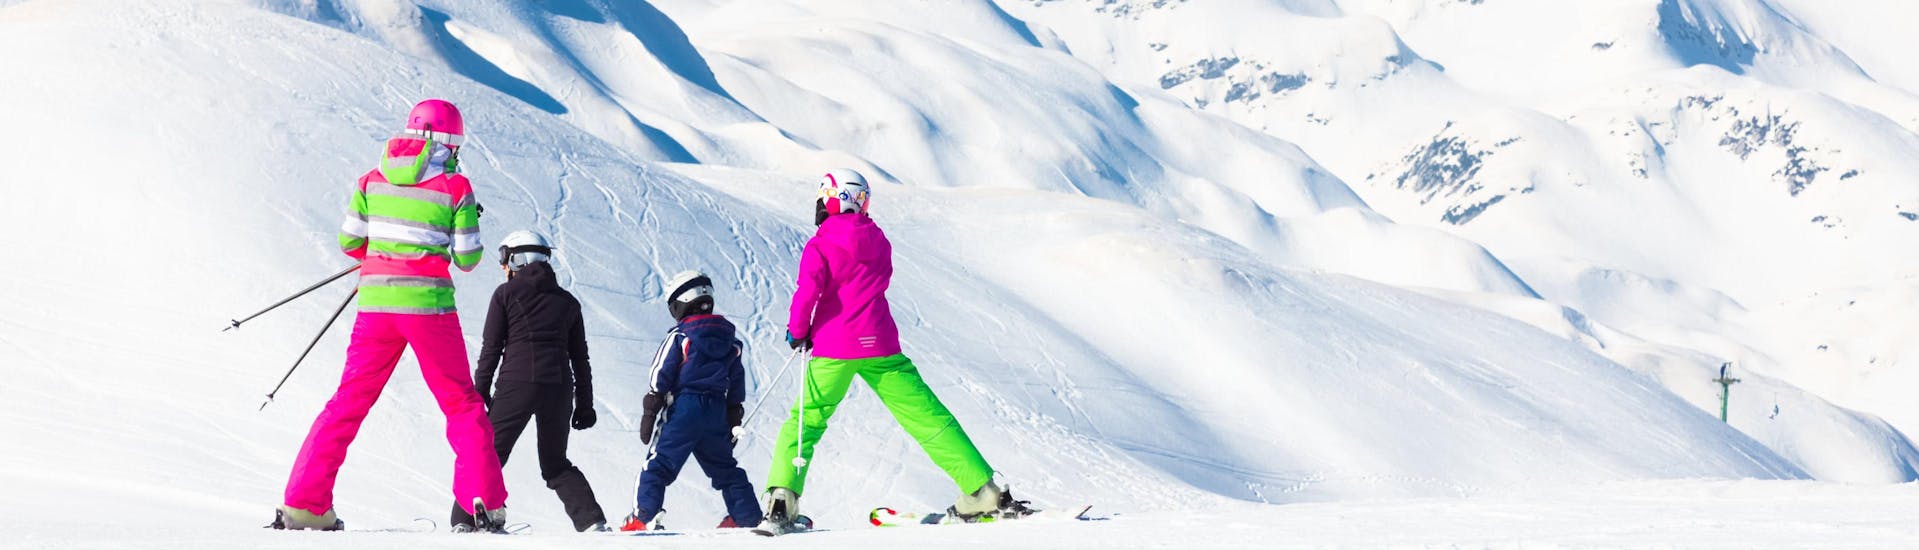 Eine Familie fährt die Pisten des Vogel Ski Center in Slowenien hinunter, wo die örtlichen Skischulen ihre Skikurse anbieten.